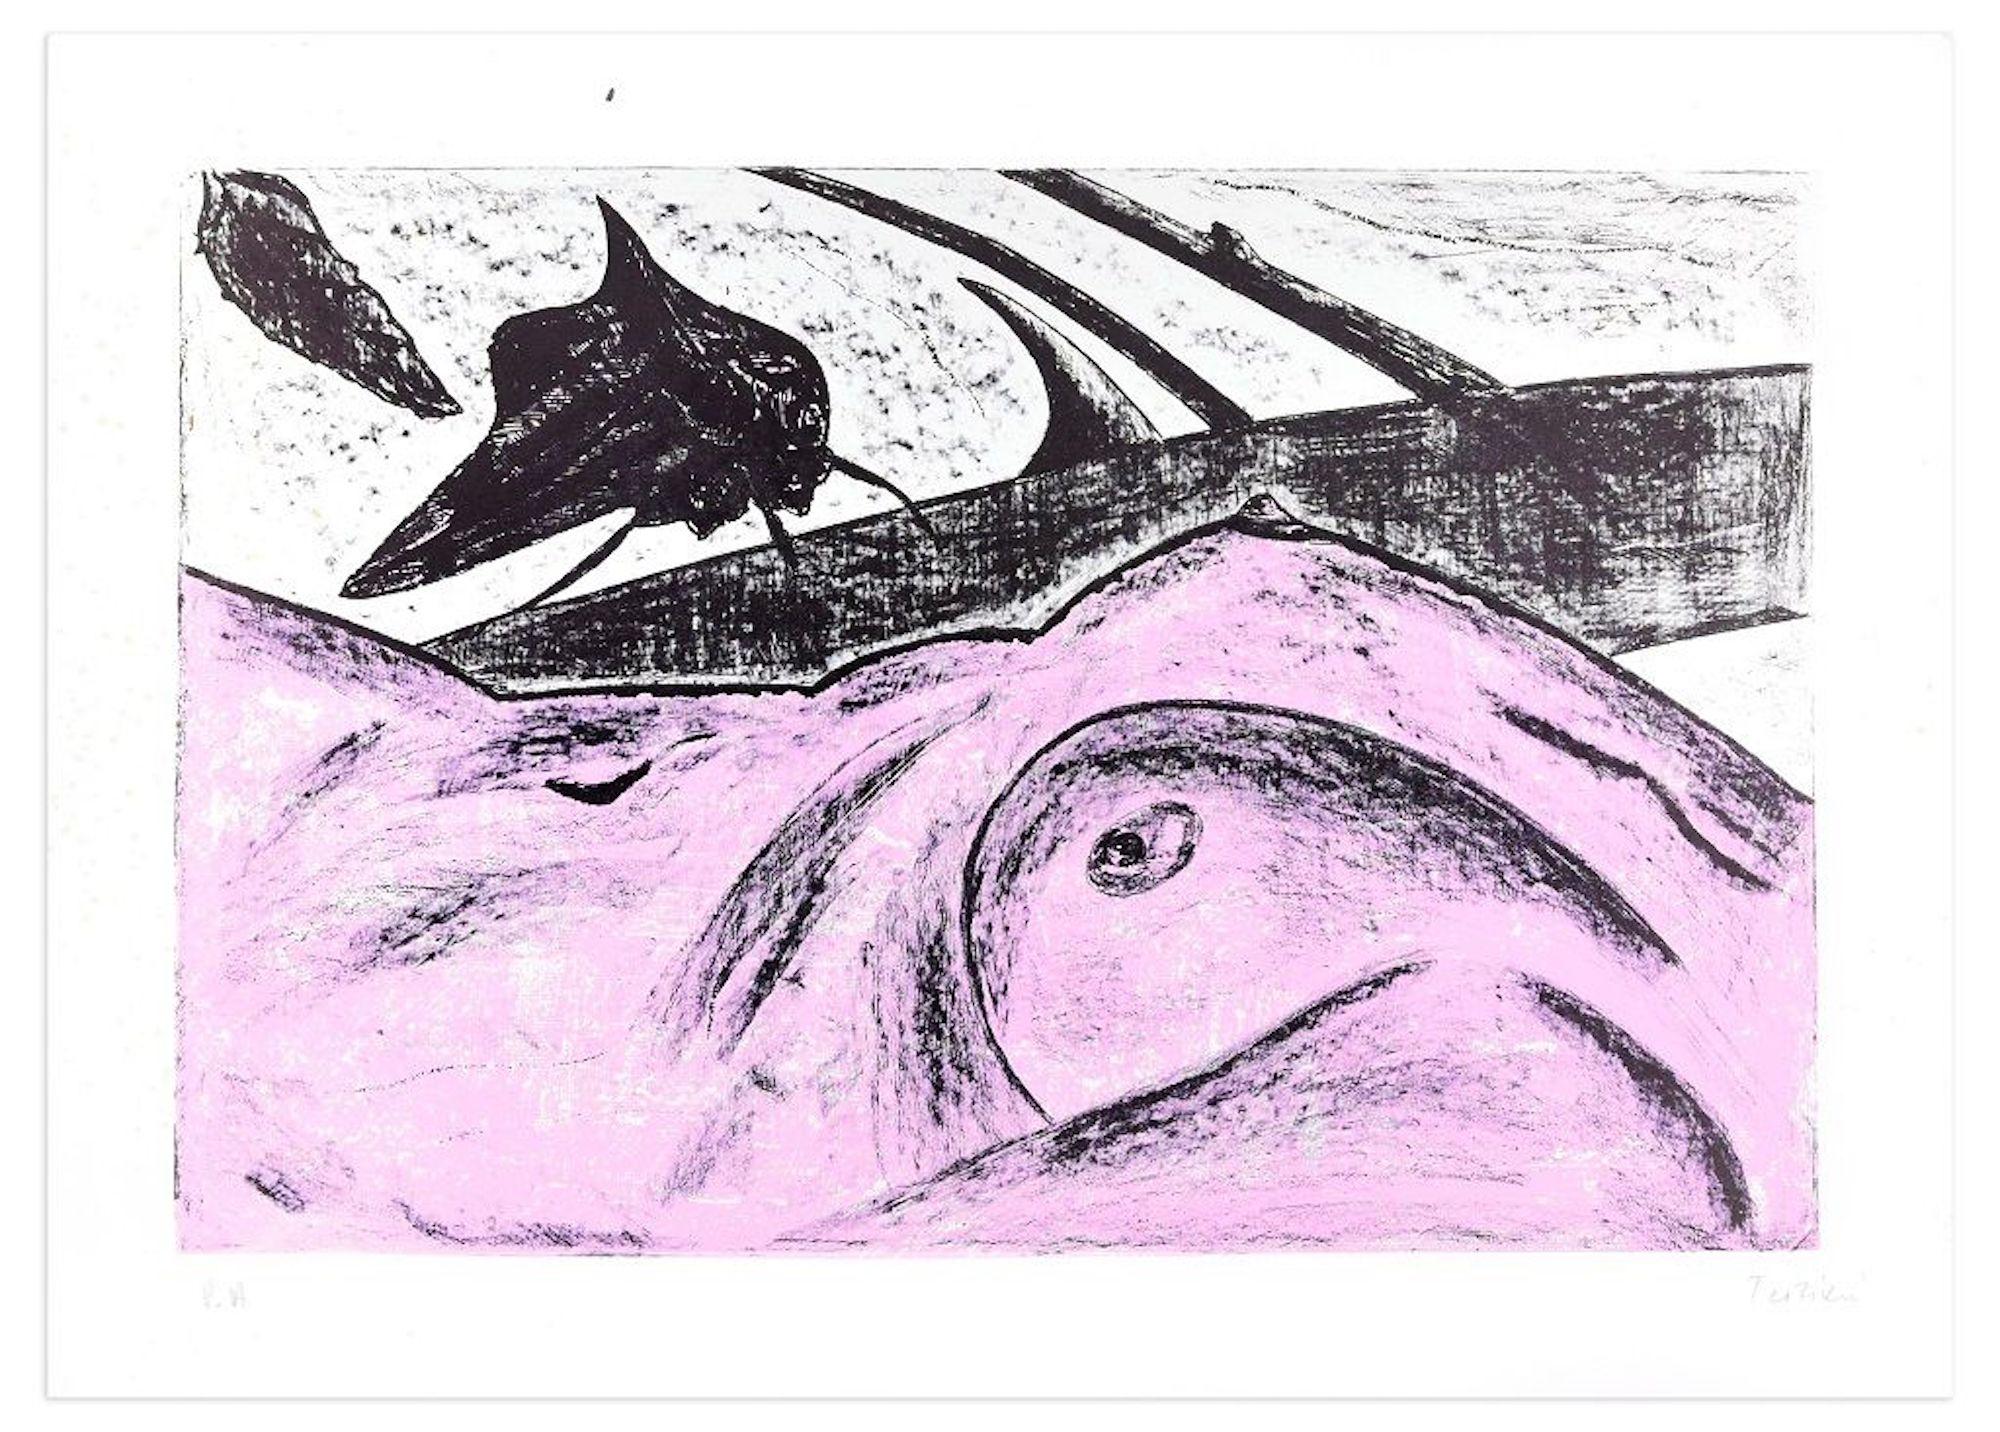 Pink Nude ist eine originale Farblithografie des Künstlers Nino Terziari aus den 1970er Jahren.

Rechts unten vom Künstler handsigniert. Künstlerexemplar (P.A. ist handschriftlich am linken unteren Rand vermerkt).

Das Kunstwerk stellt ein Detail